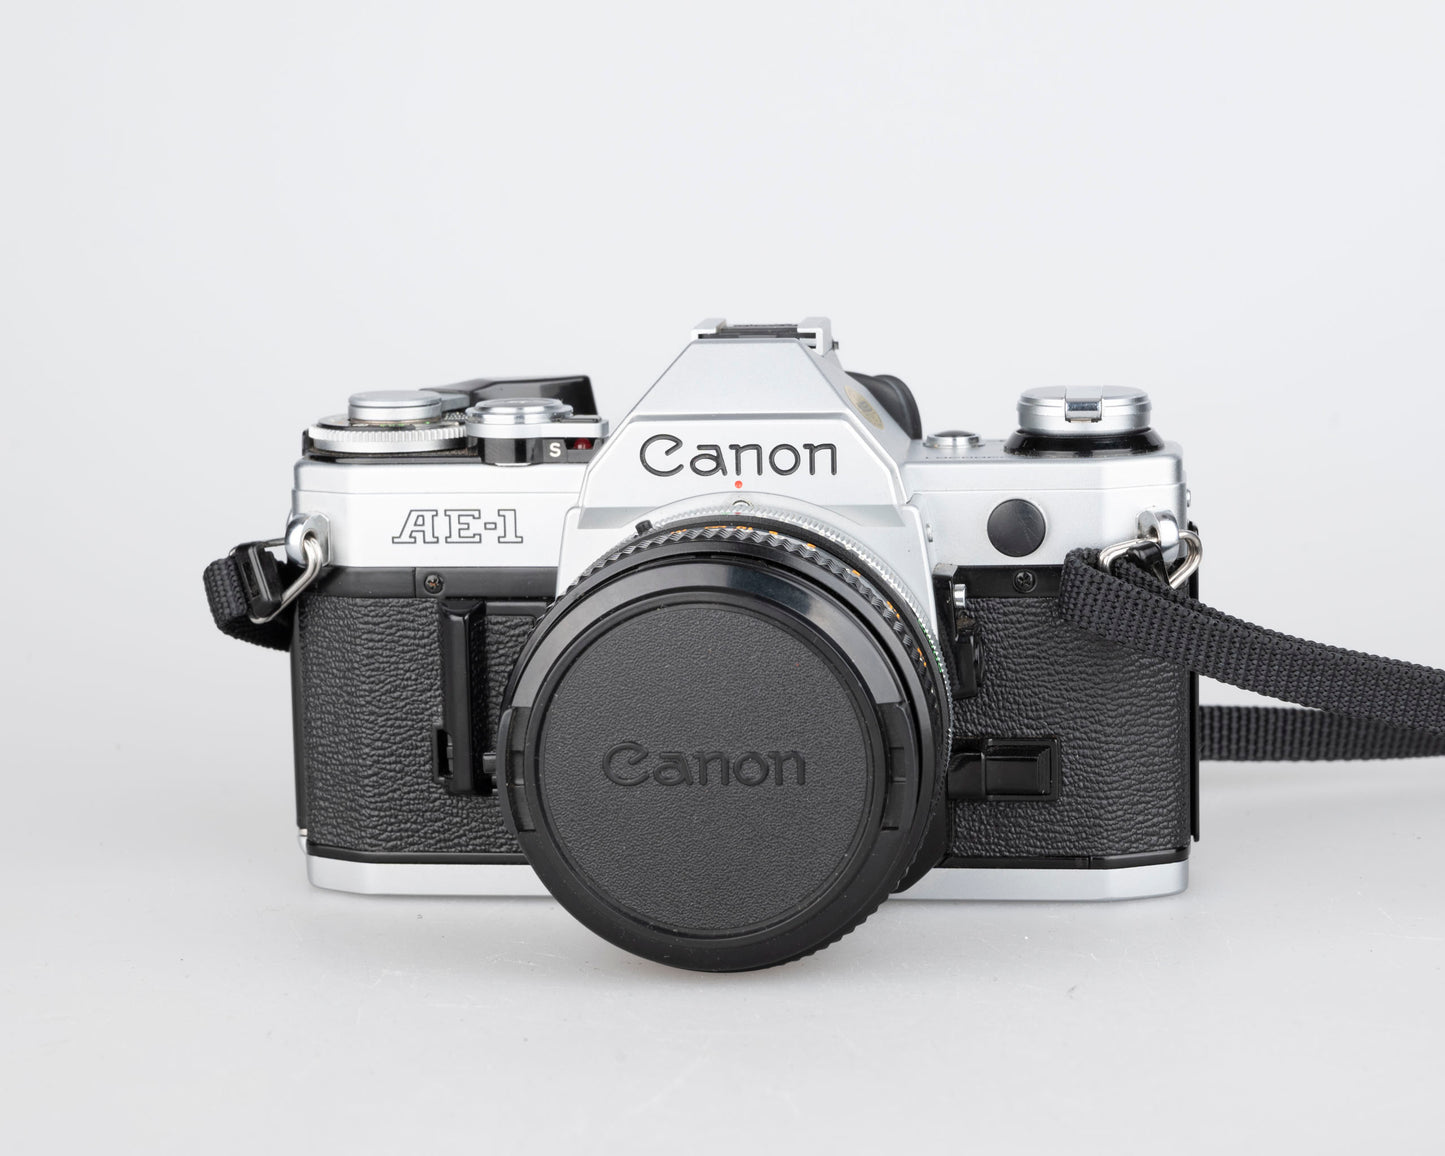 Canon AE-1 35 mm SLR avec objectif Canon FD 50 mm f1.8 + flash Speedlite 188A + manuel d'origine (série 2388361)